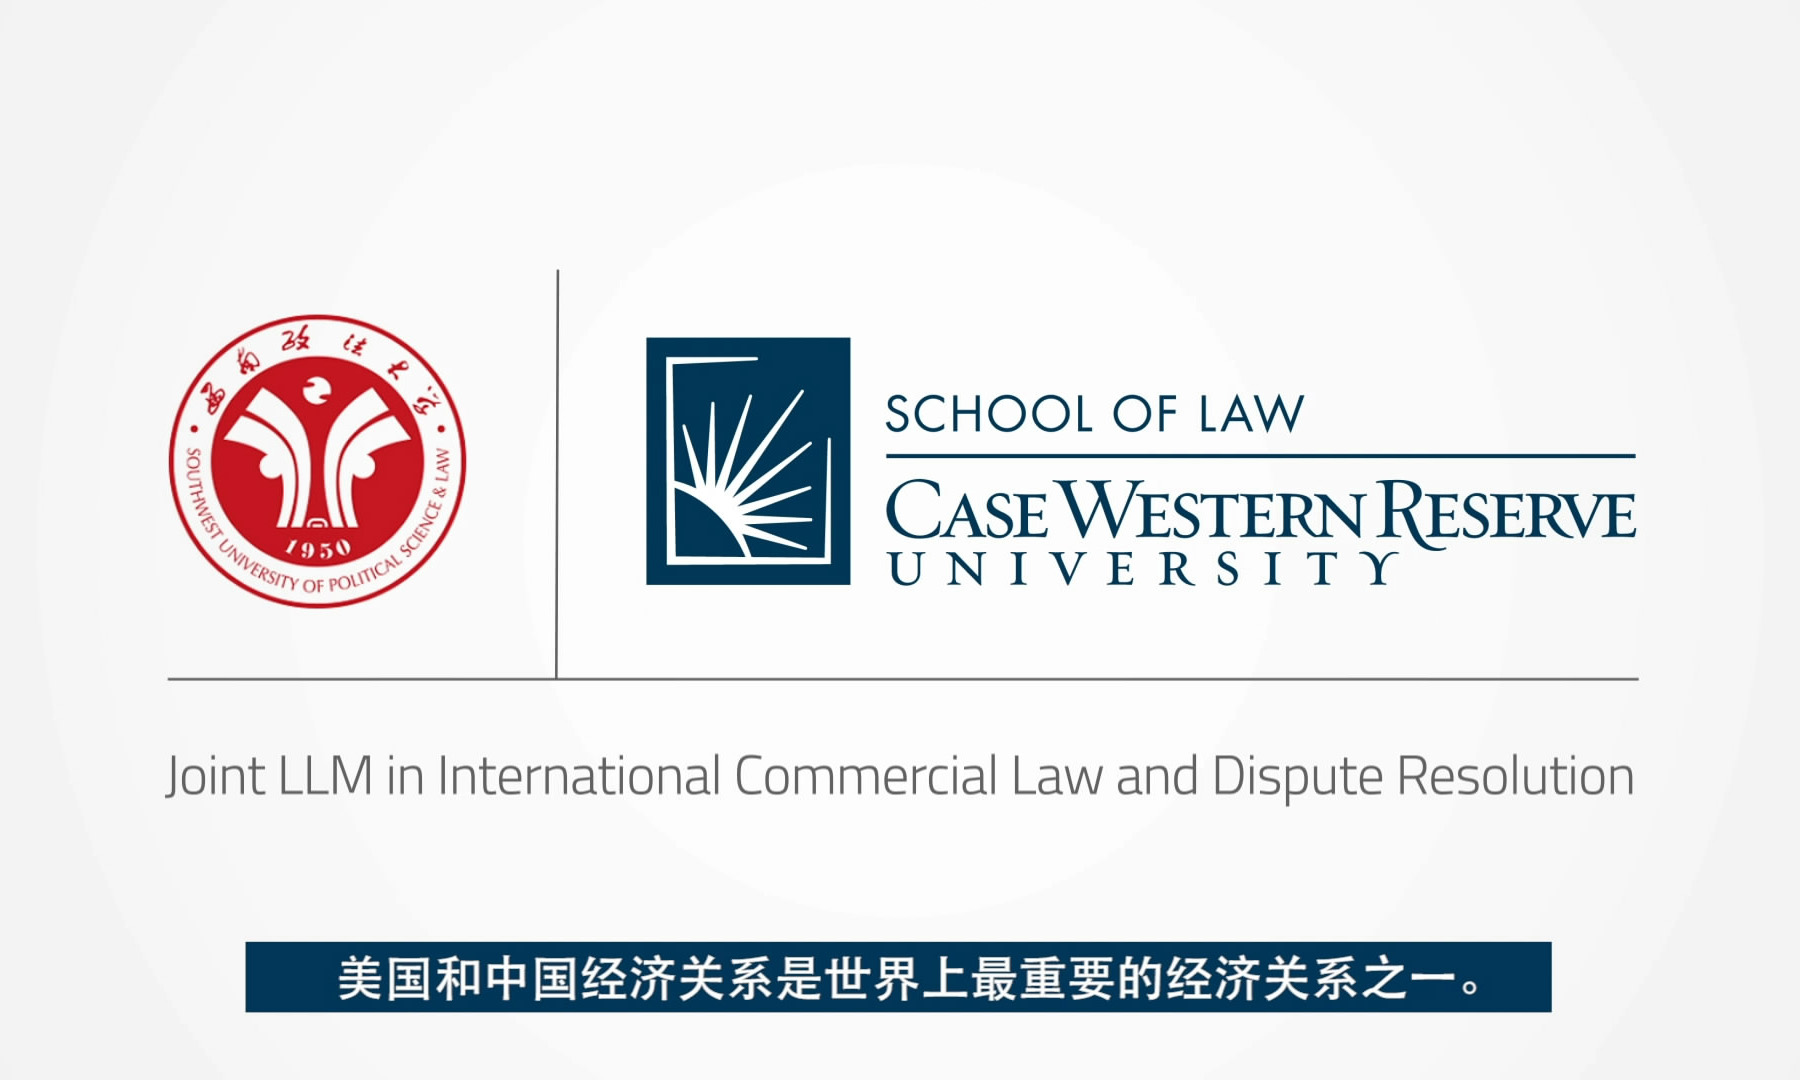 中国欢迎来到公赌船jcjc710美国凯斯西储大学中外合作办学法律硕士双学位项目